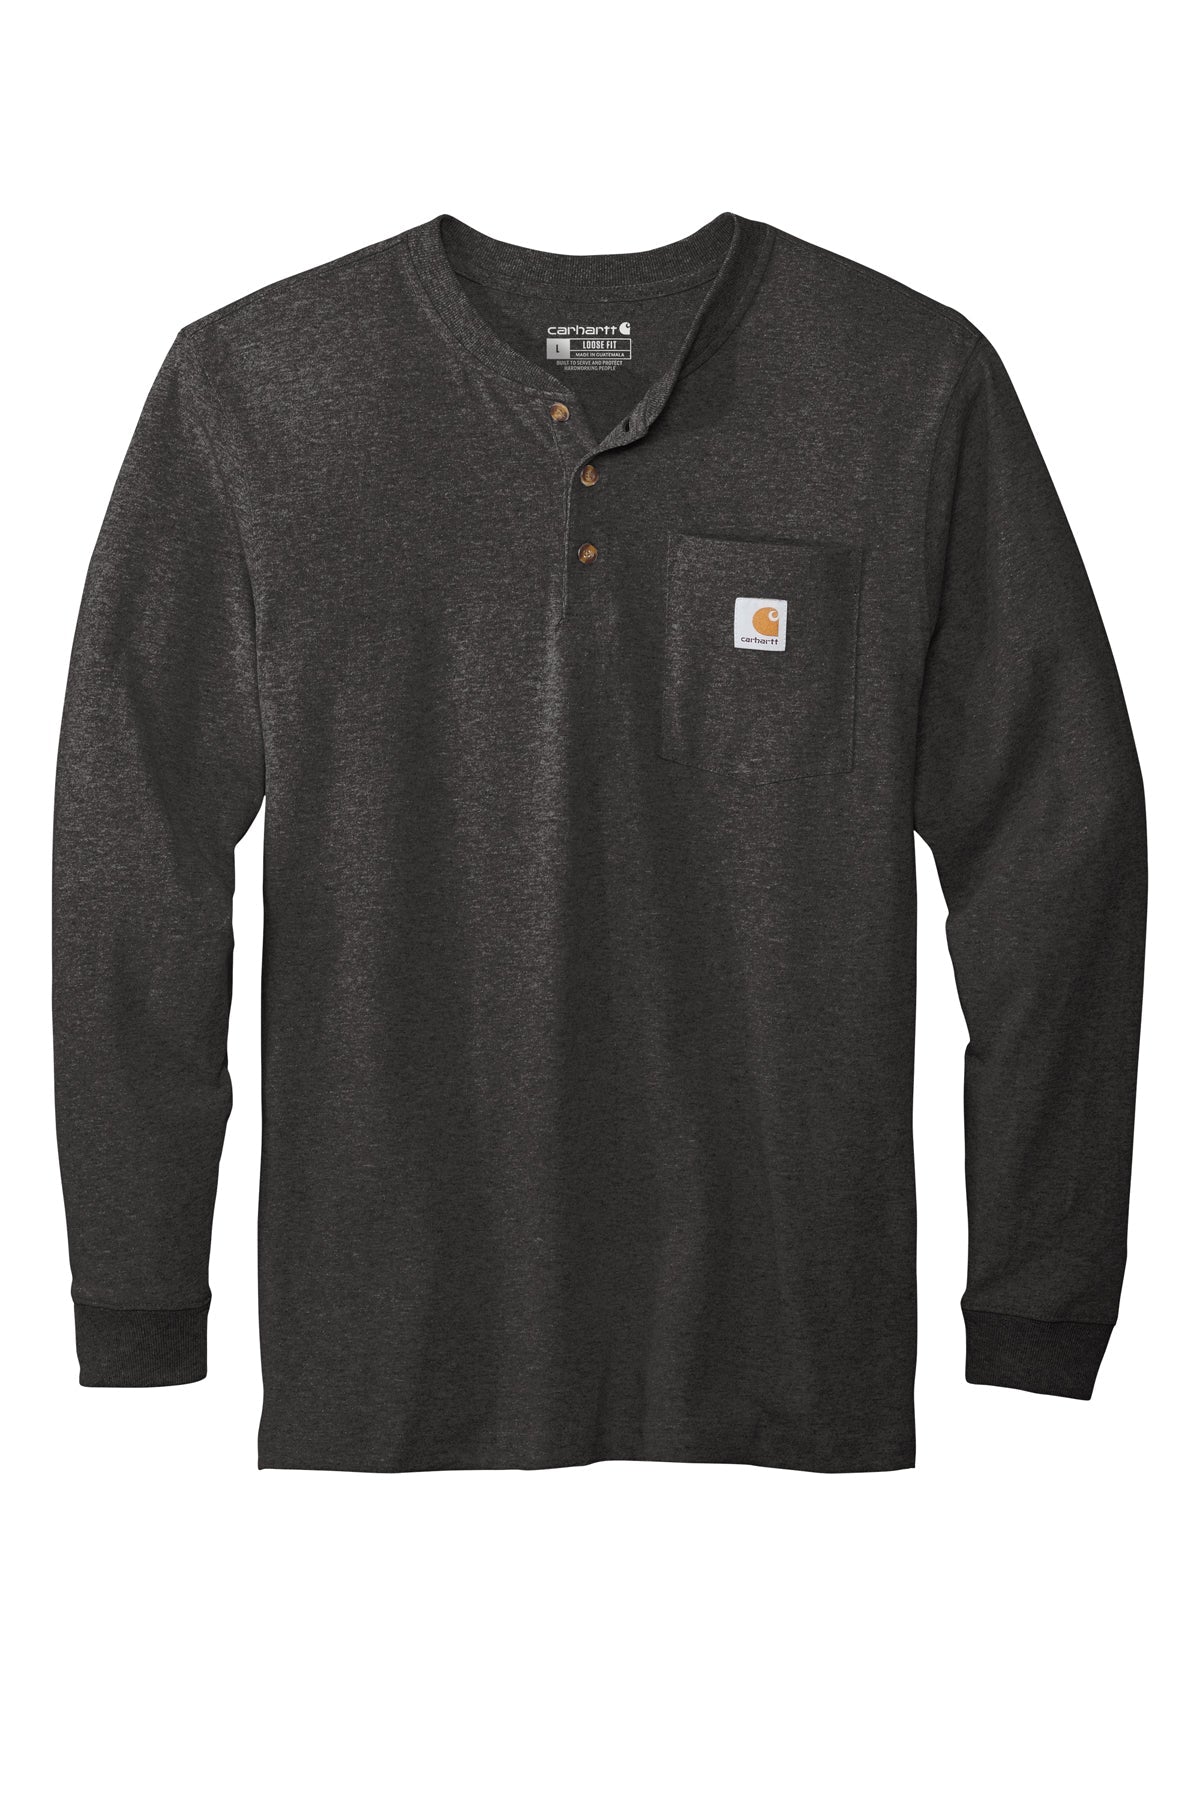 Carhartt® - Long Sleeve Henley T-Shirt - CTK128